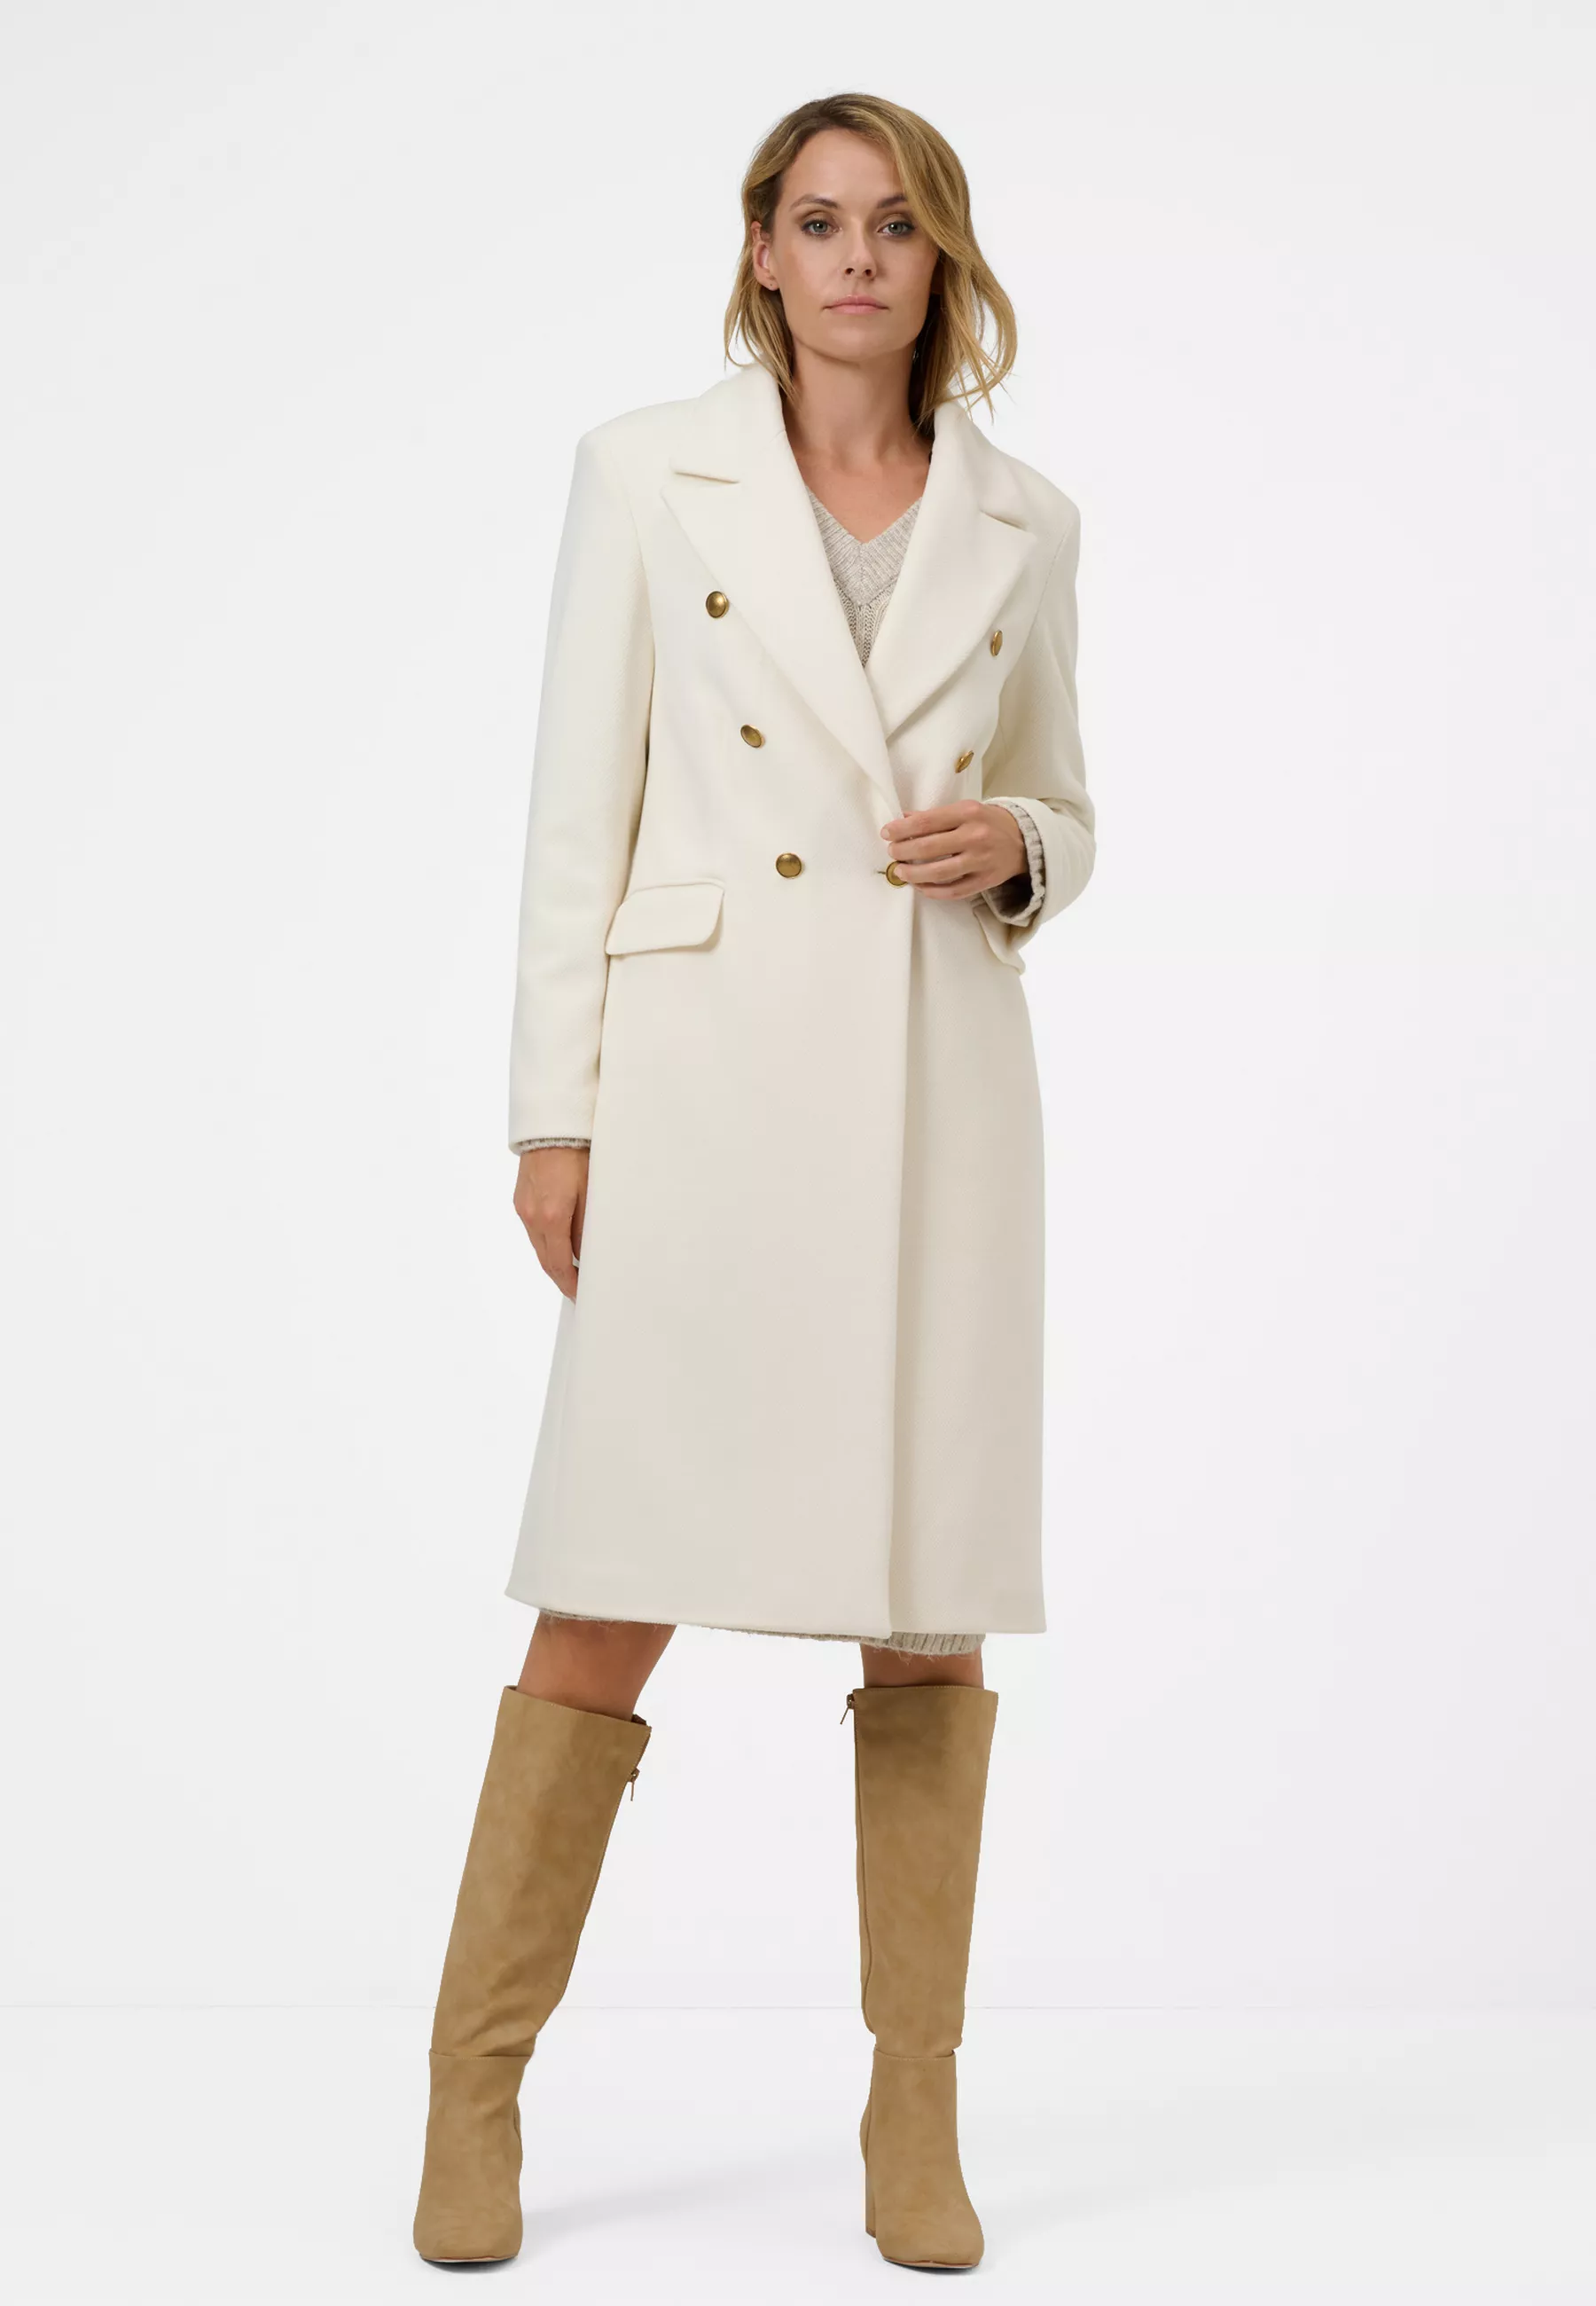 Damen Textil Mantel Giulia in Weiß von Ricano, Frontansicht am Model